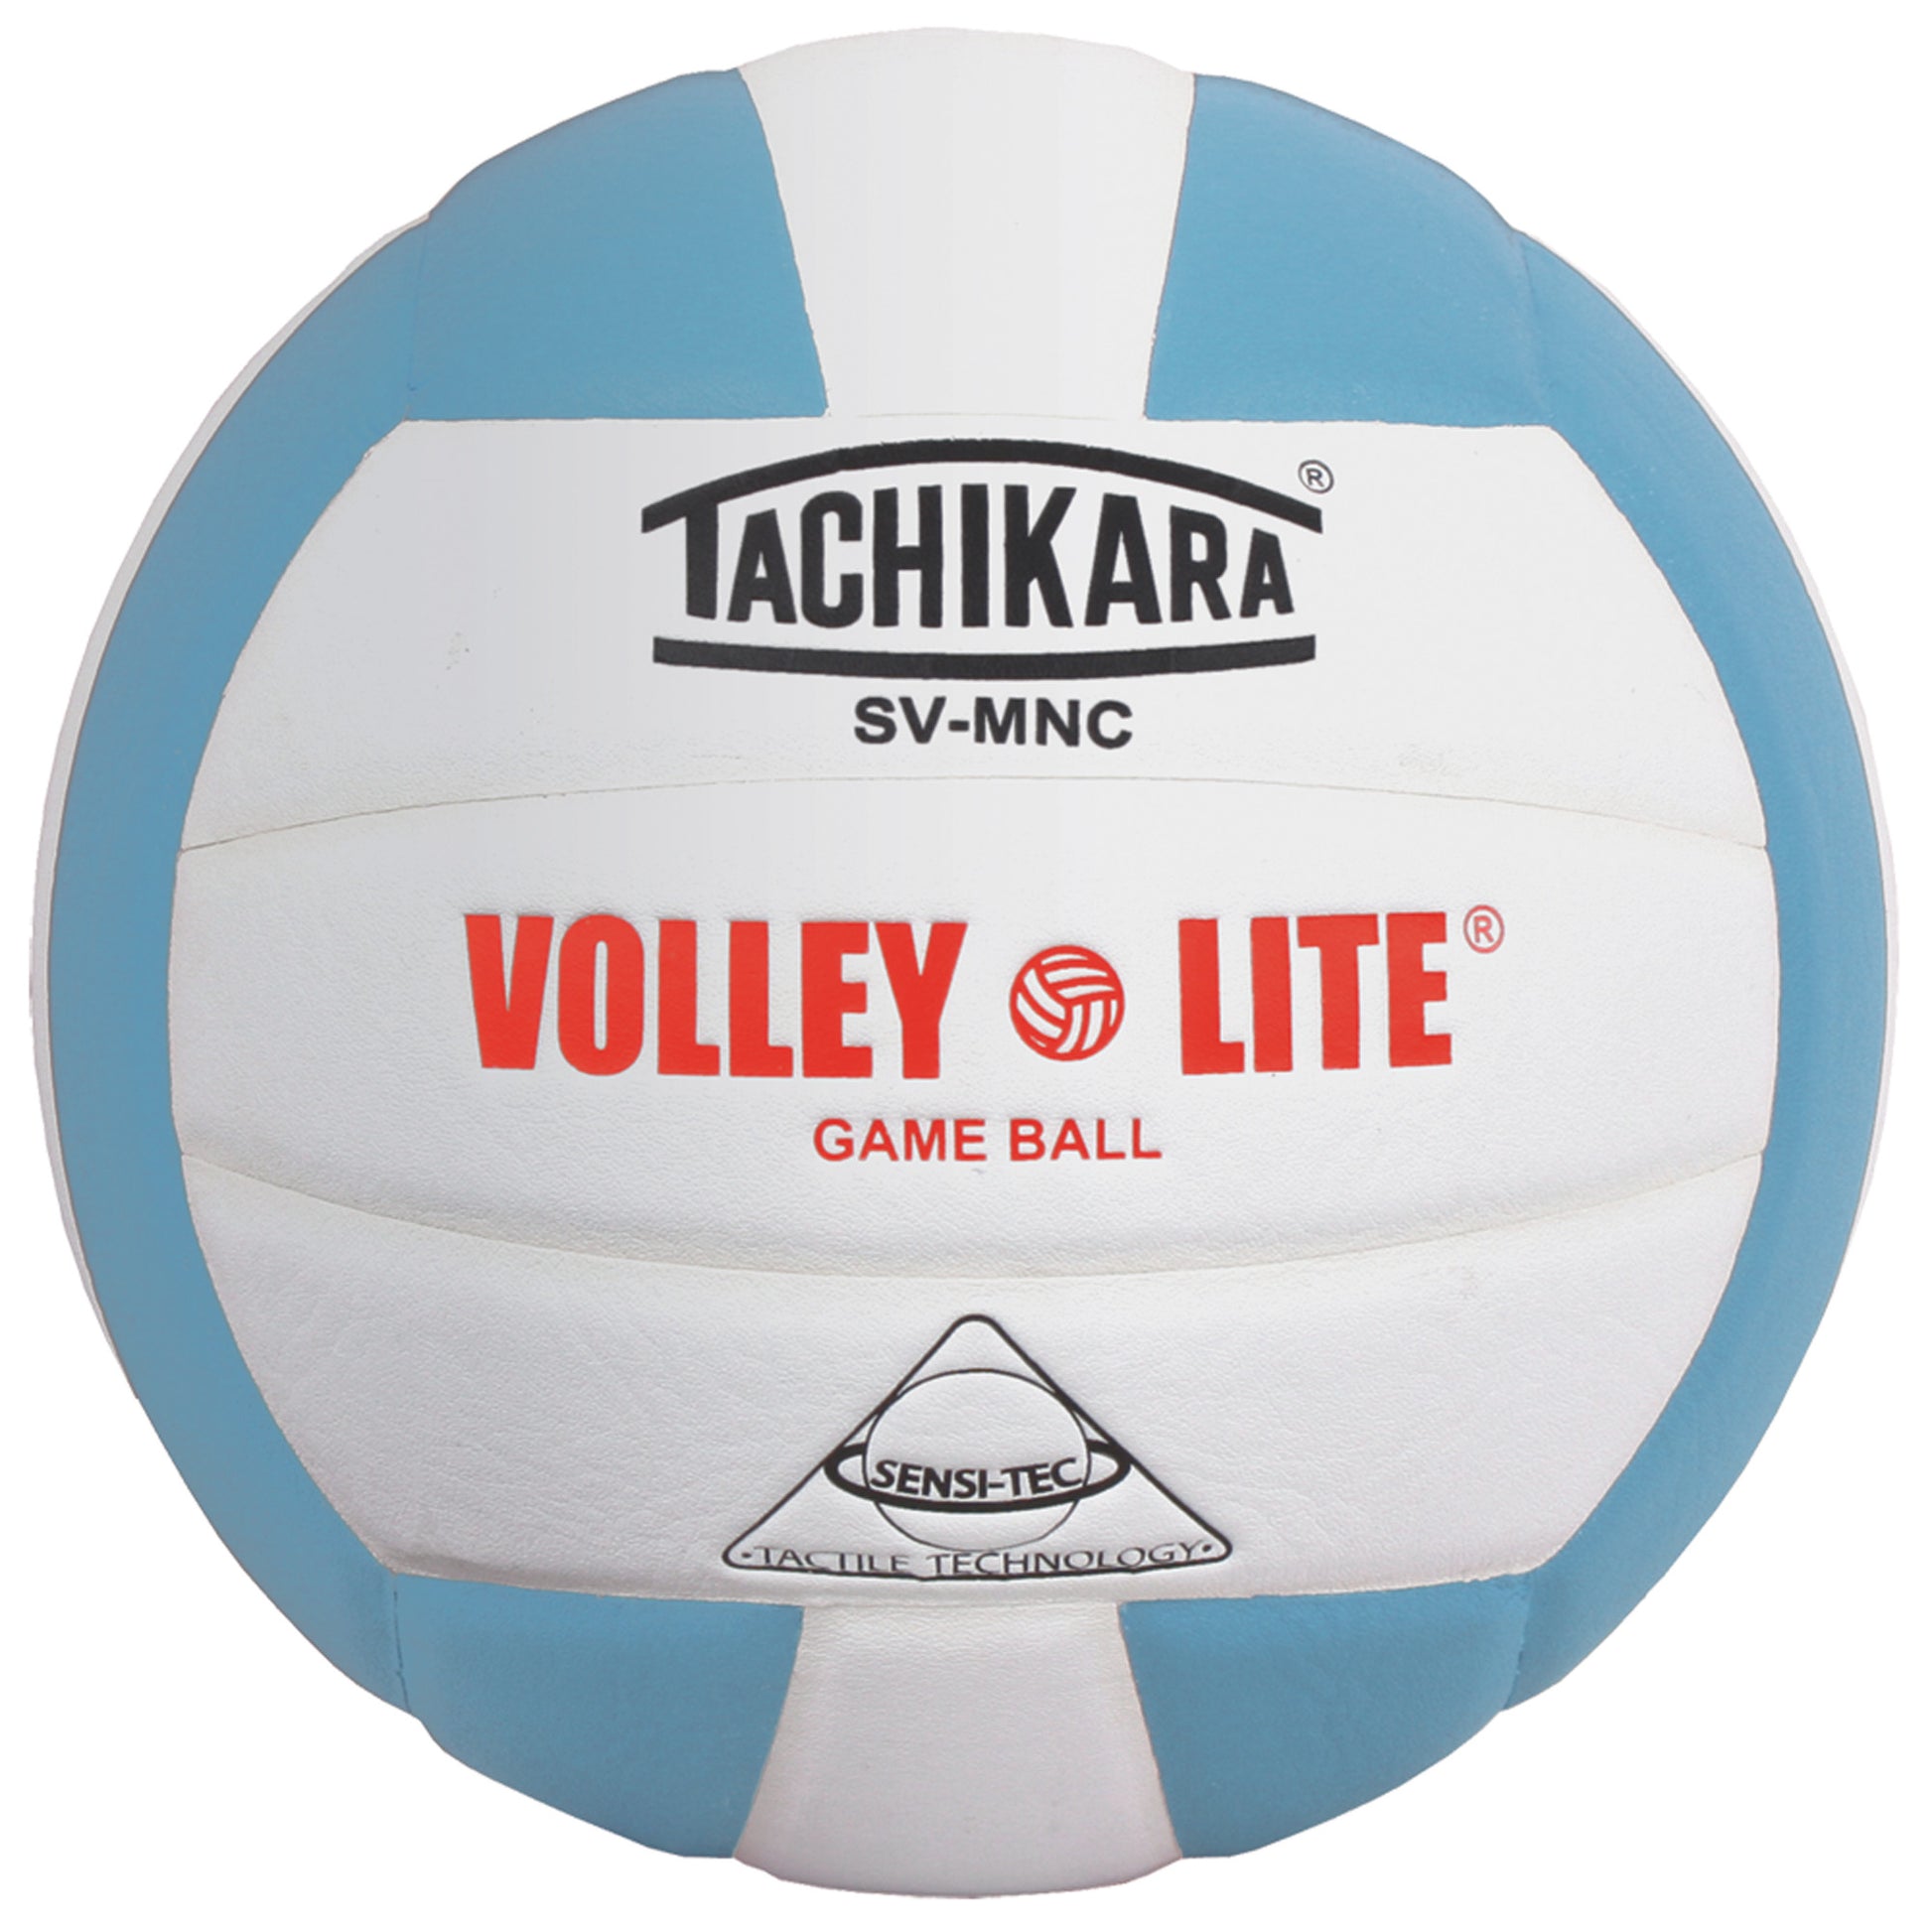 Tachikara SV-MNC "Volley-Lite" Volleyball Powder Blue/White